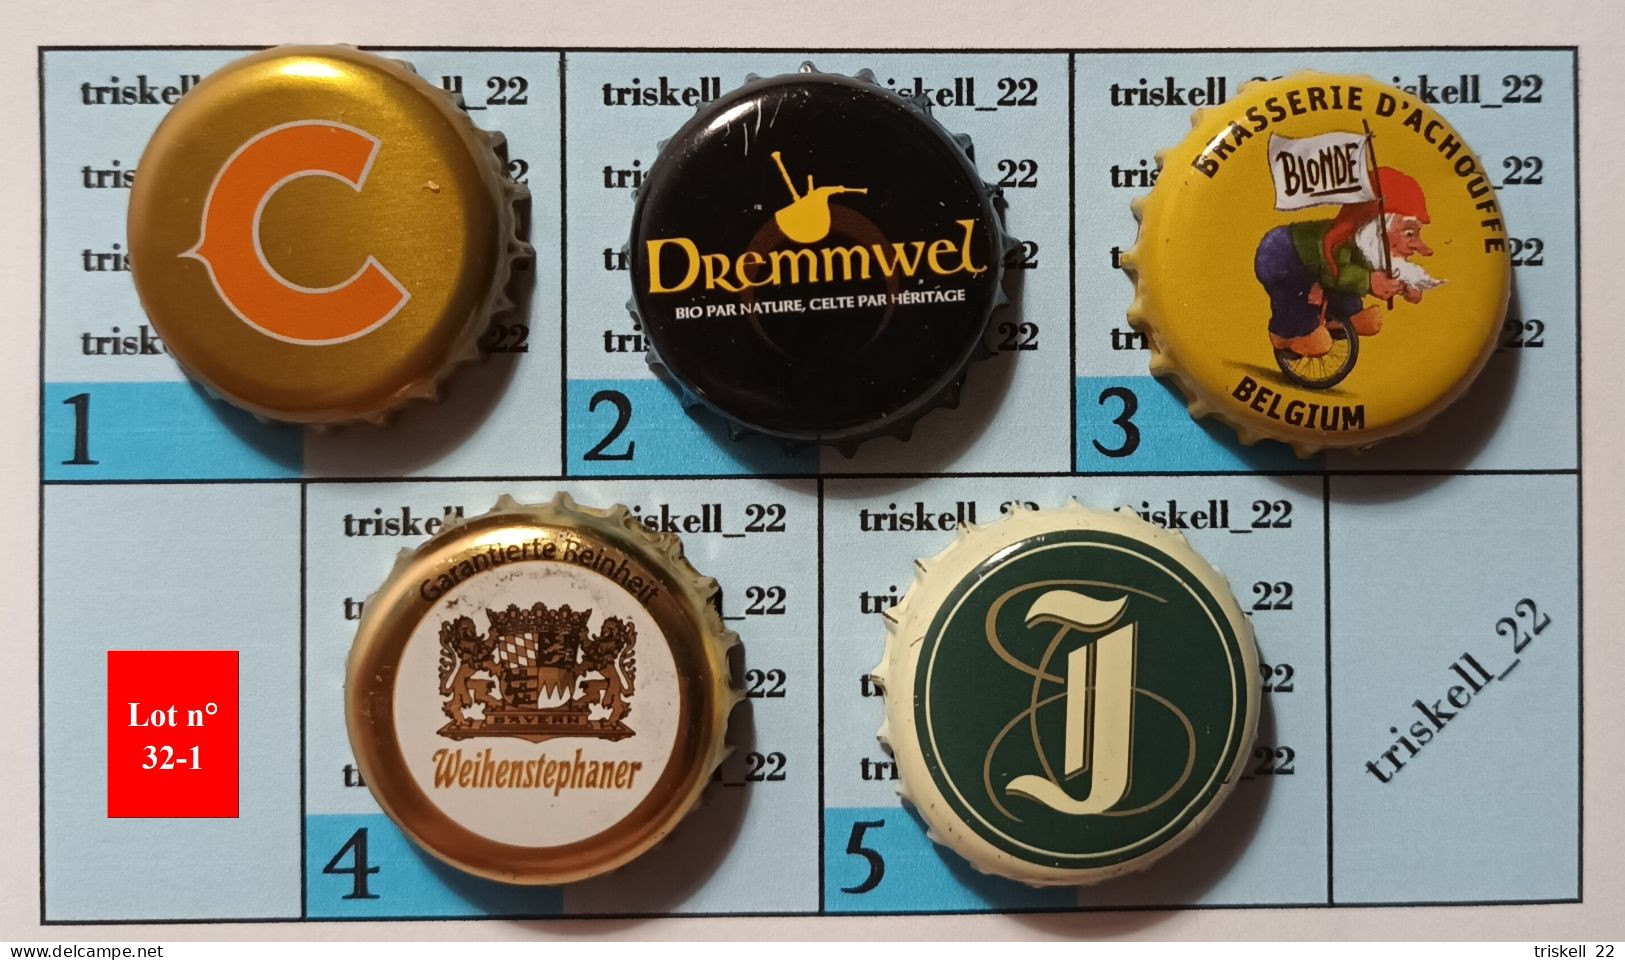 5 Capsules De Bière   Lot N° 32-1 - Cerveza